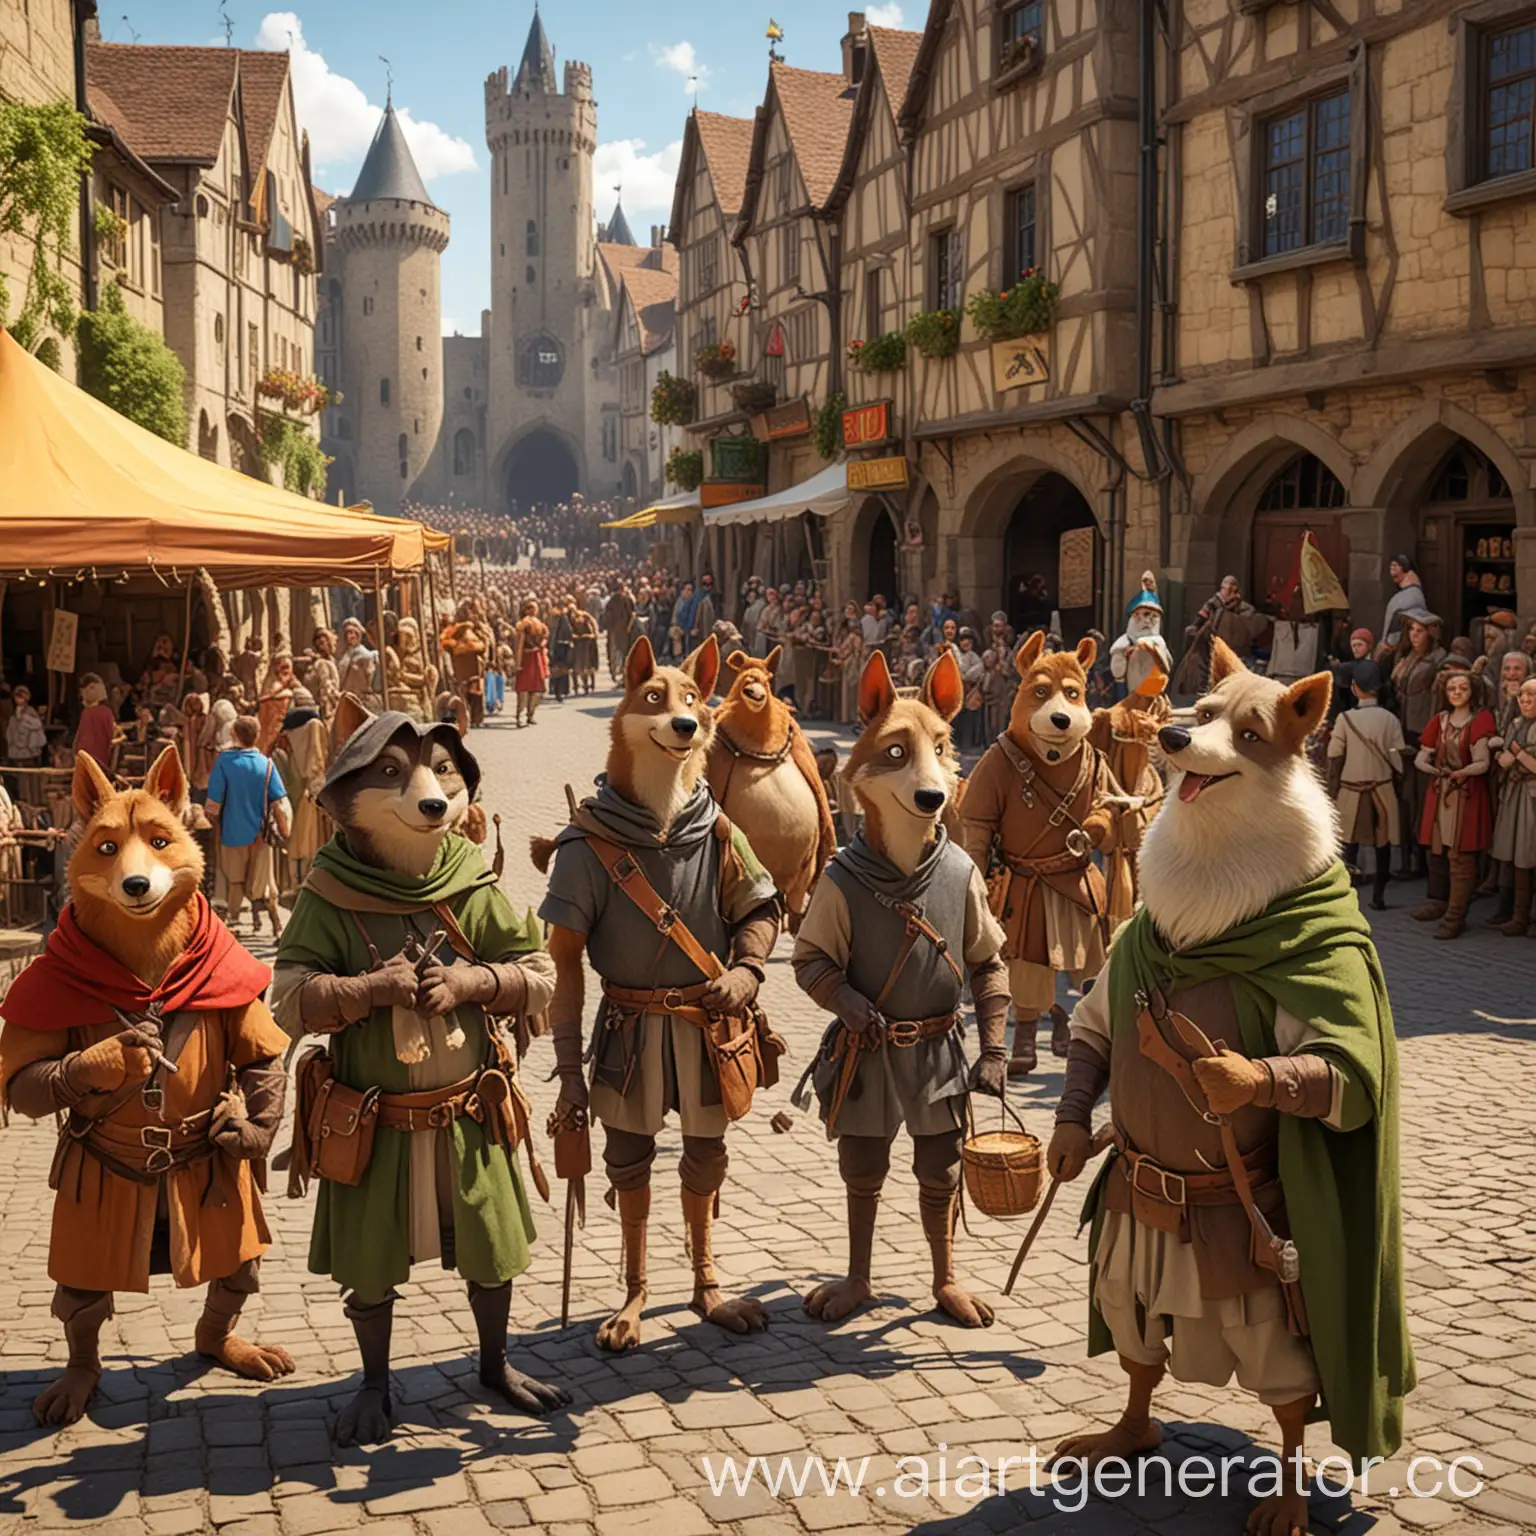 Животные из мультфильма робин гуд на большом фестивале в средневековом городе солнечно